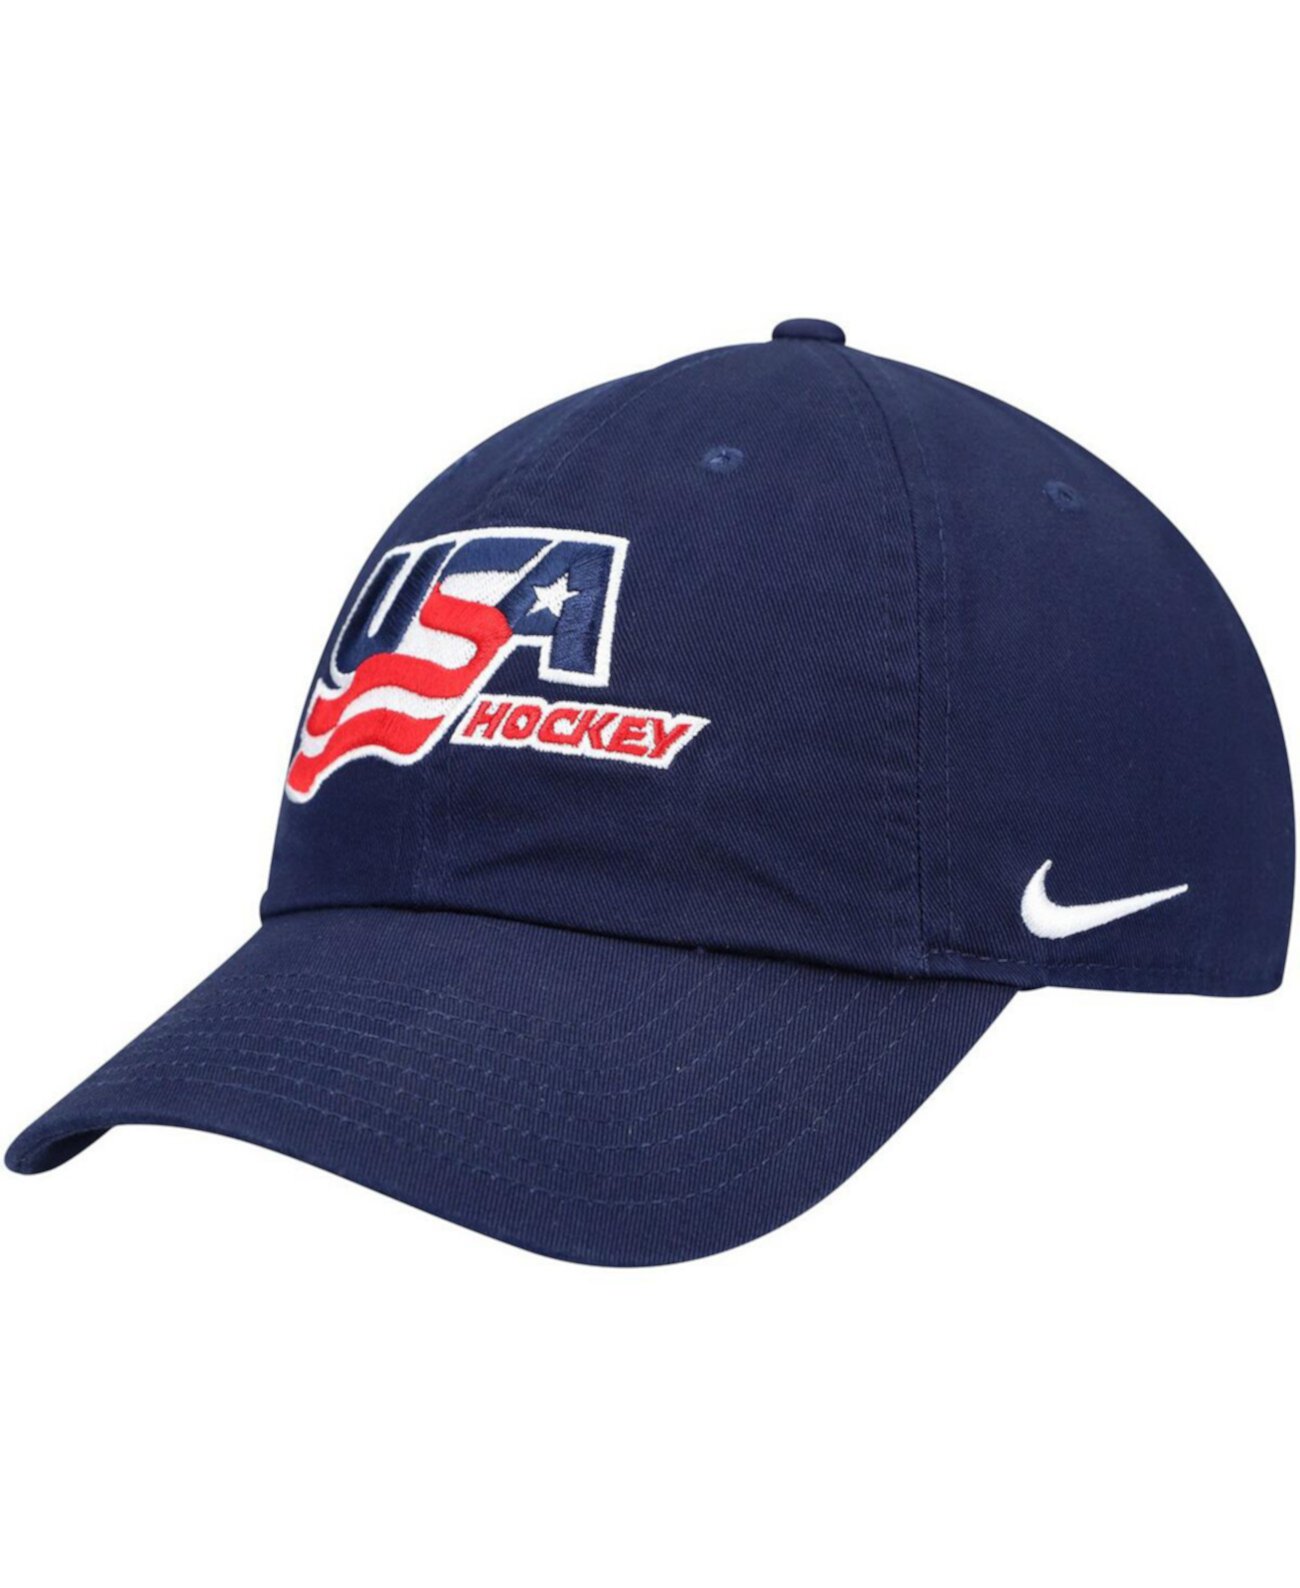 Женская регулируемая кепка темно-синего цвета для хоккейного кампуса США Nike